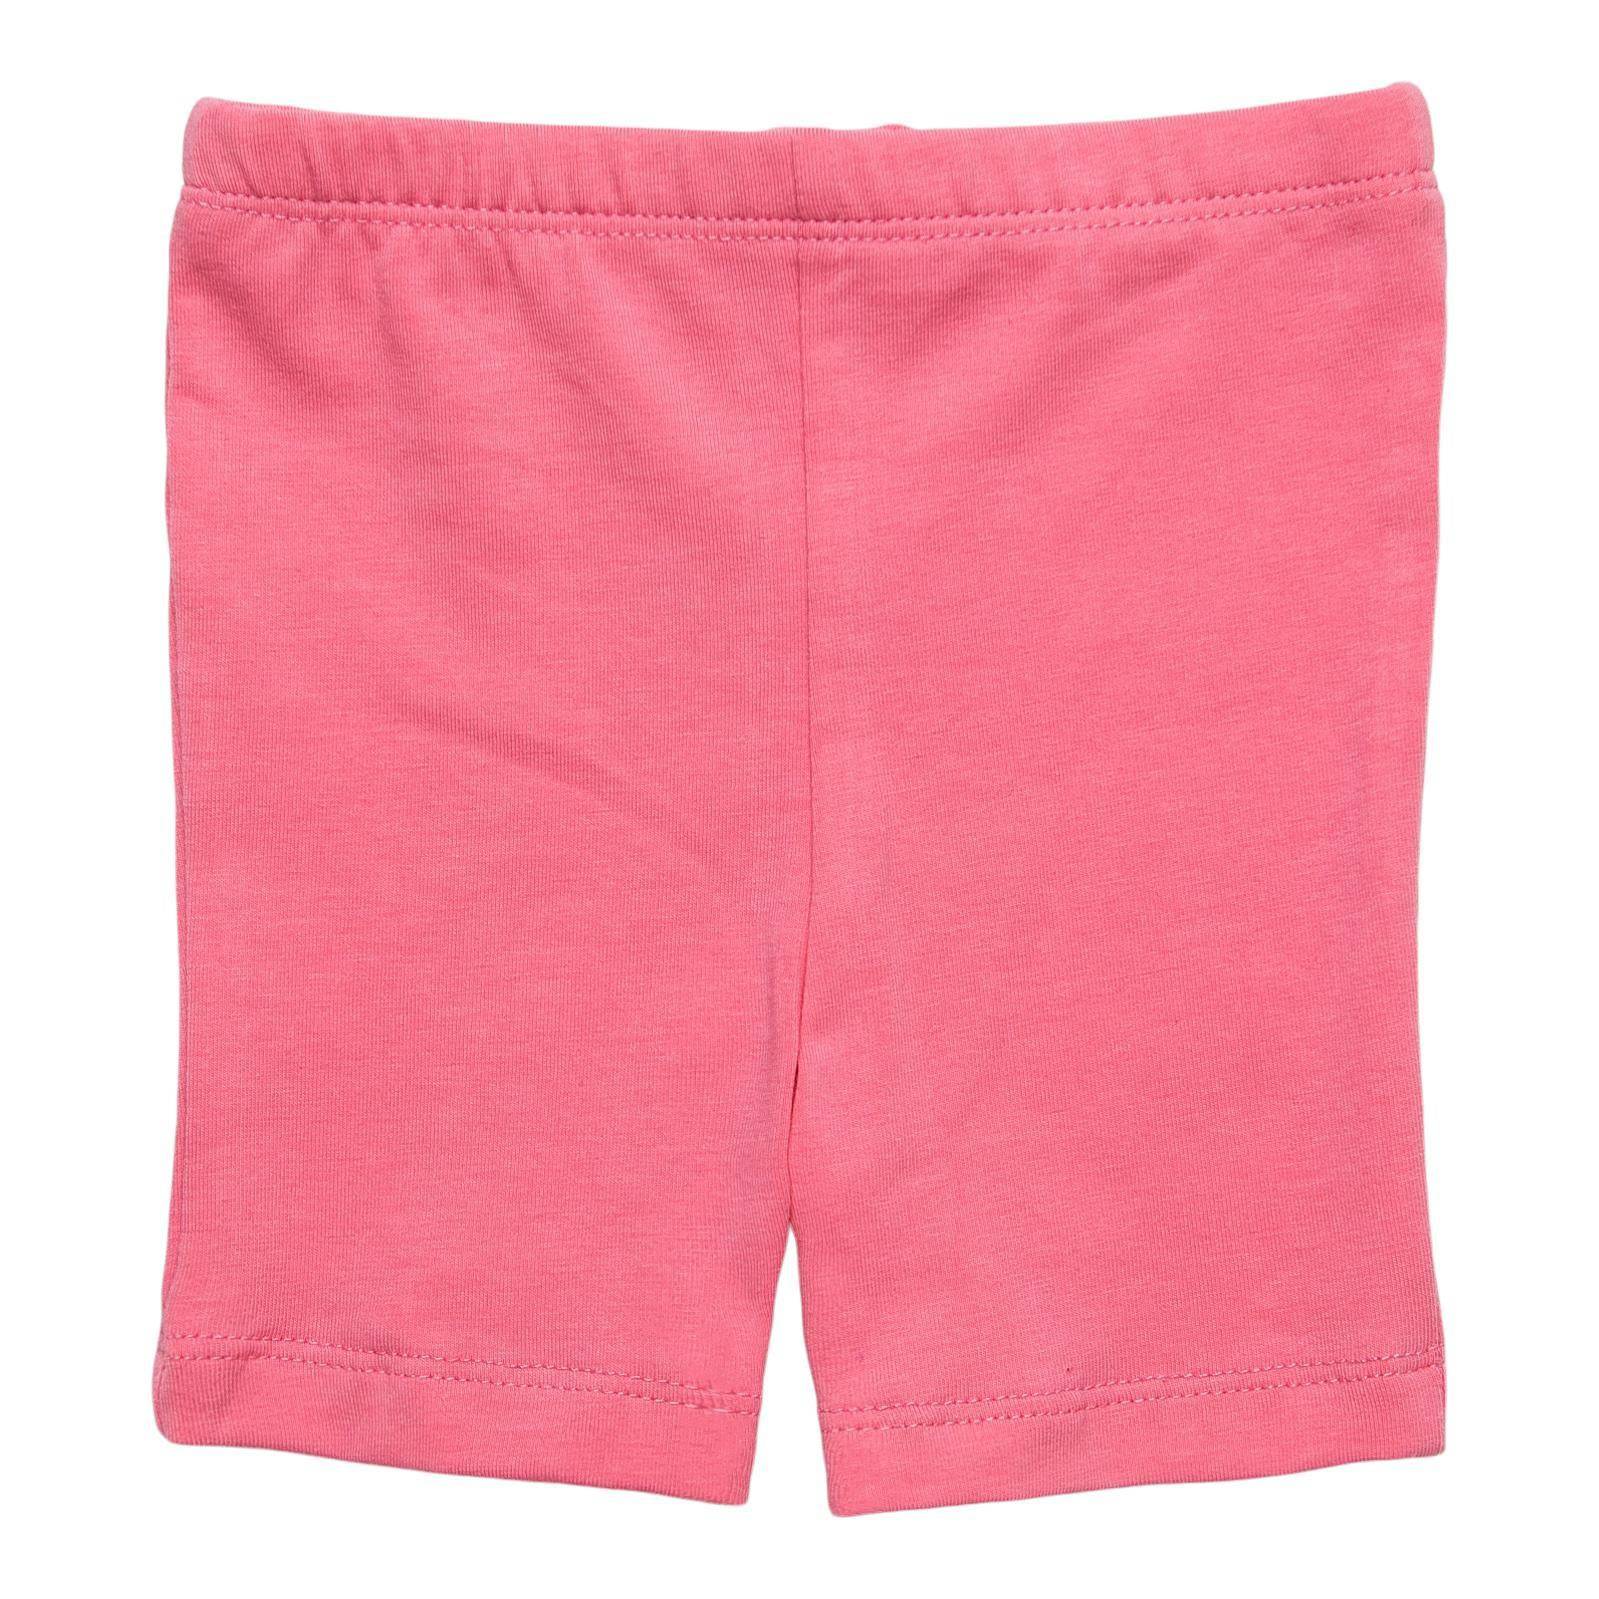 Flamingo Twirl Shorts - Twinkle Twinkle Little One